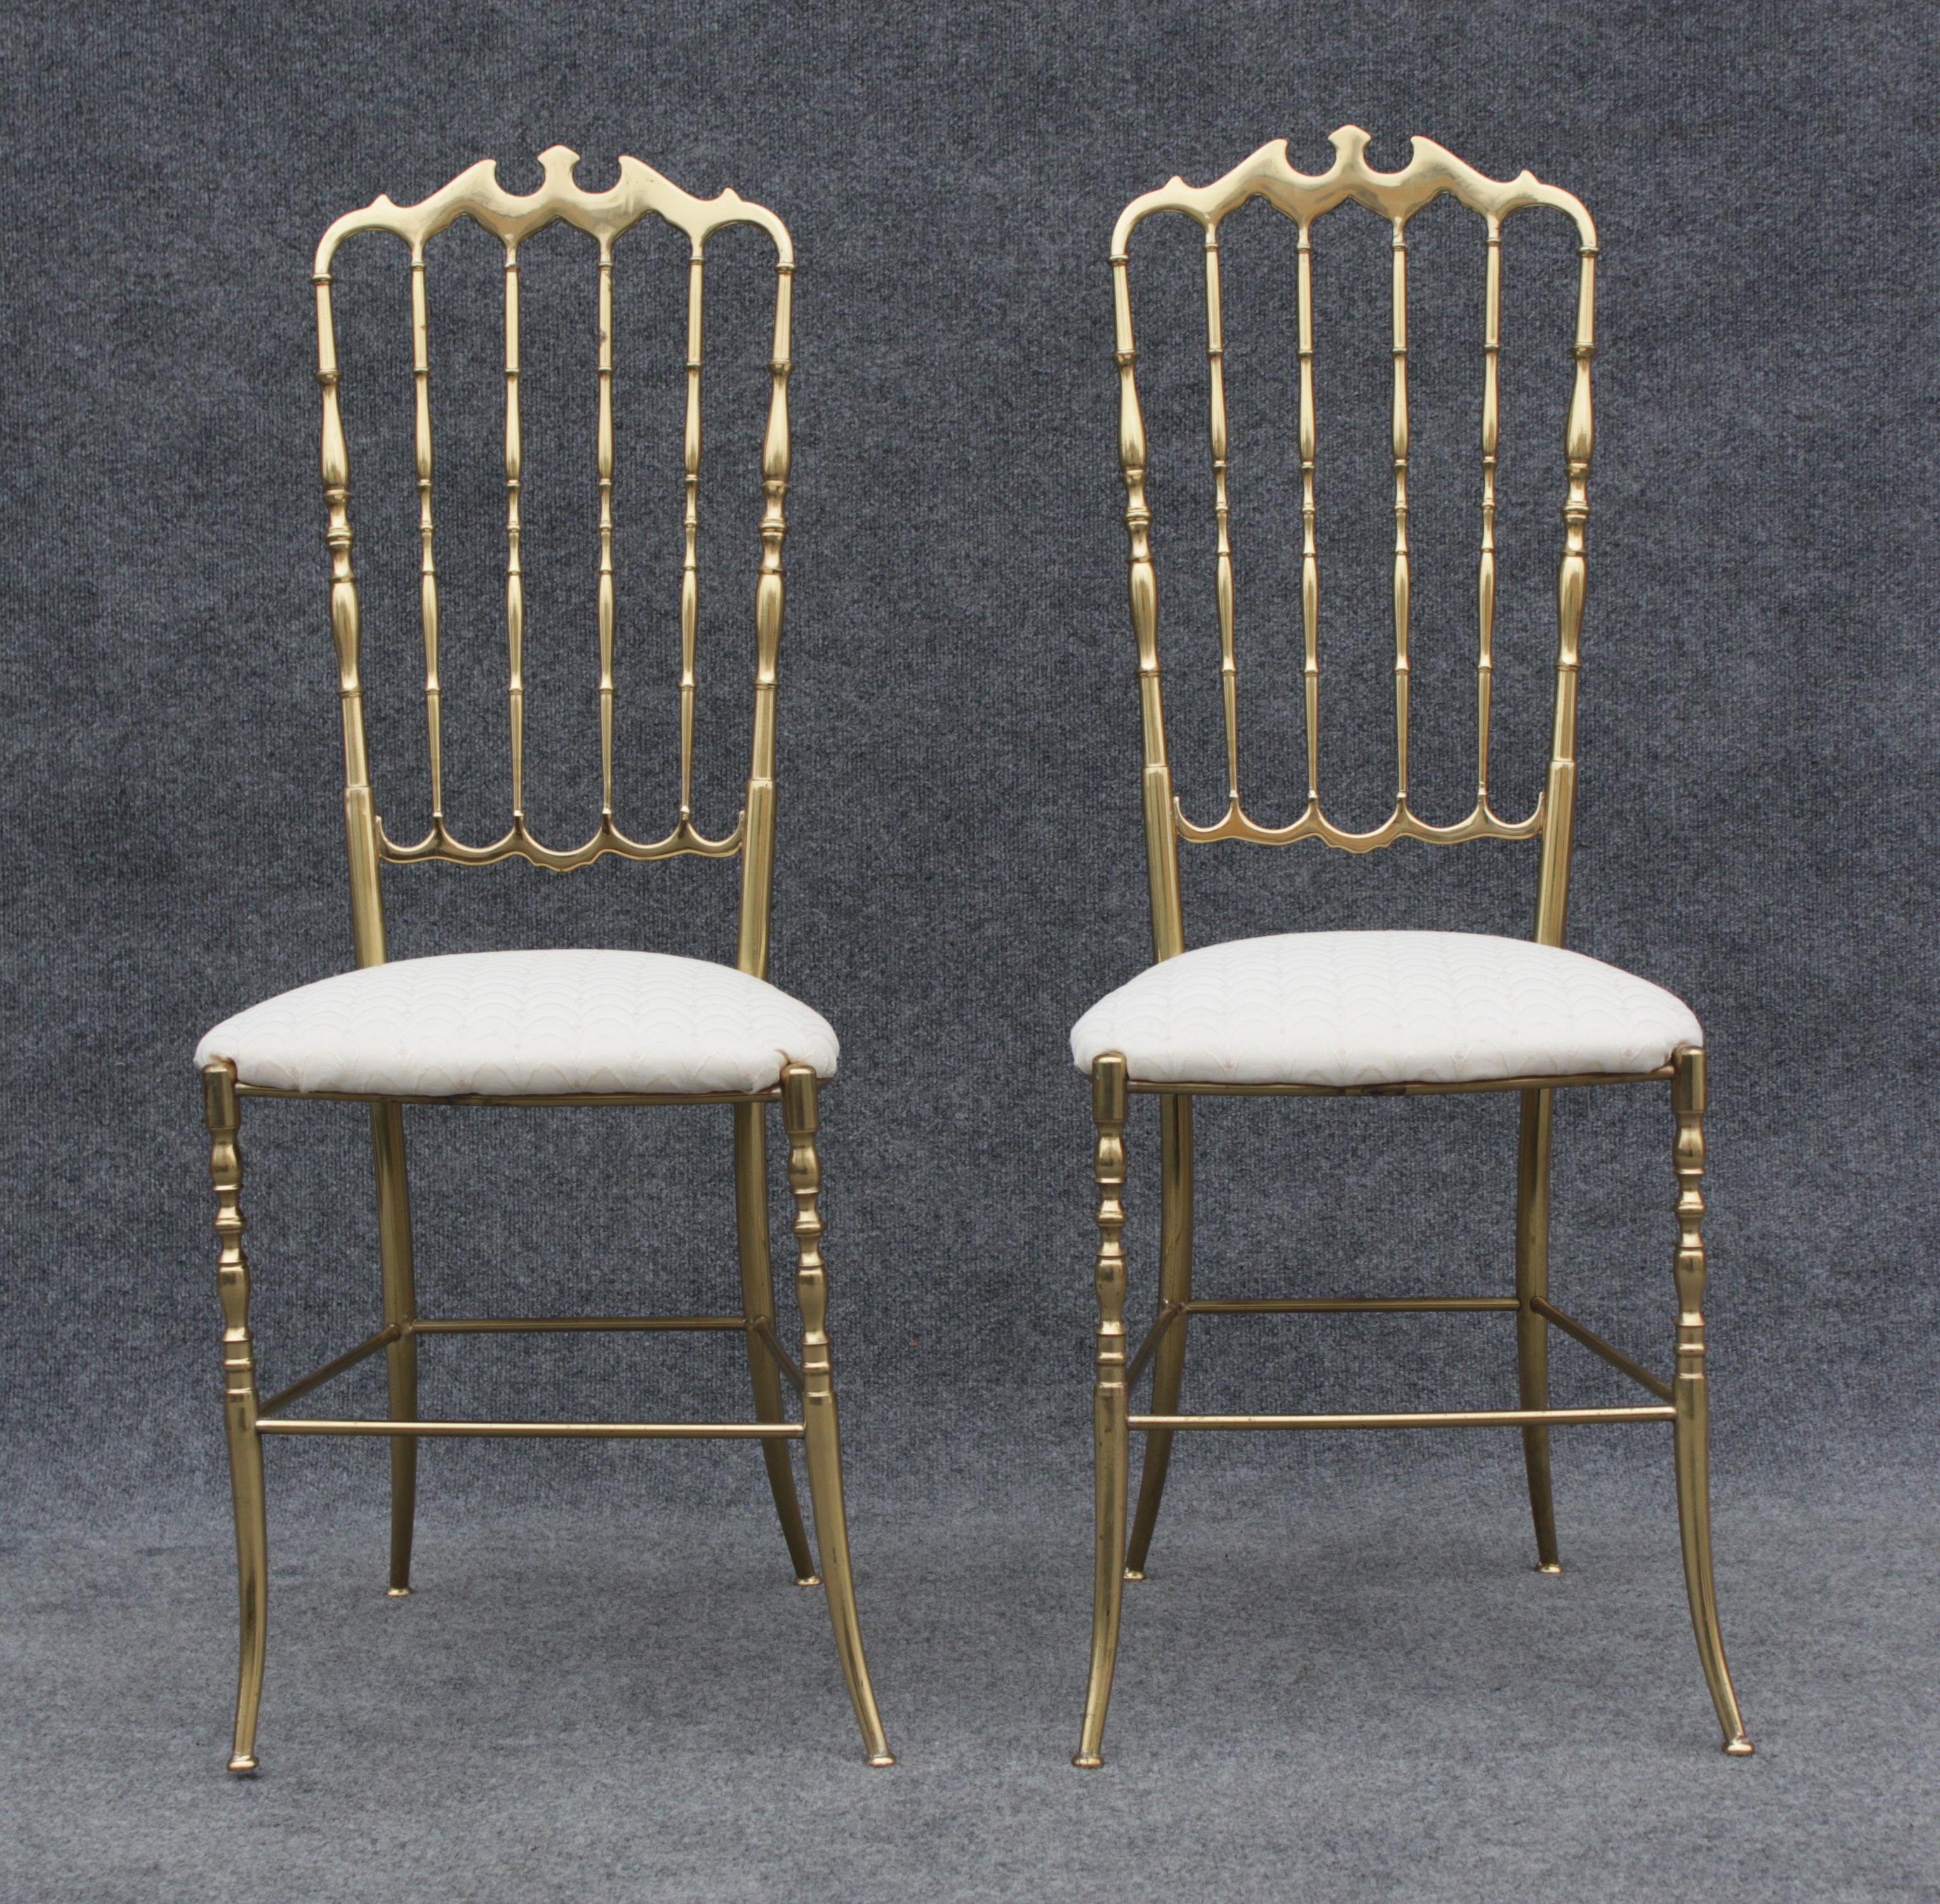 Conçues au début des années 1900, ces chaises ont été produites dans les années 1960 par Chiavari. Fabriqués en Italie, ils bénéficient d'une excellente construction. Avec des cadres en laiton massif, ils présentent des détails complexes sur tout le